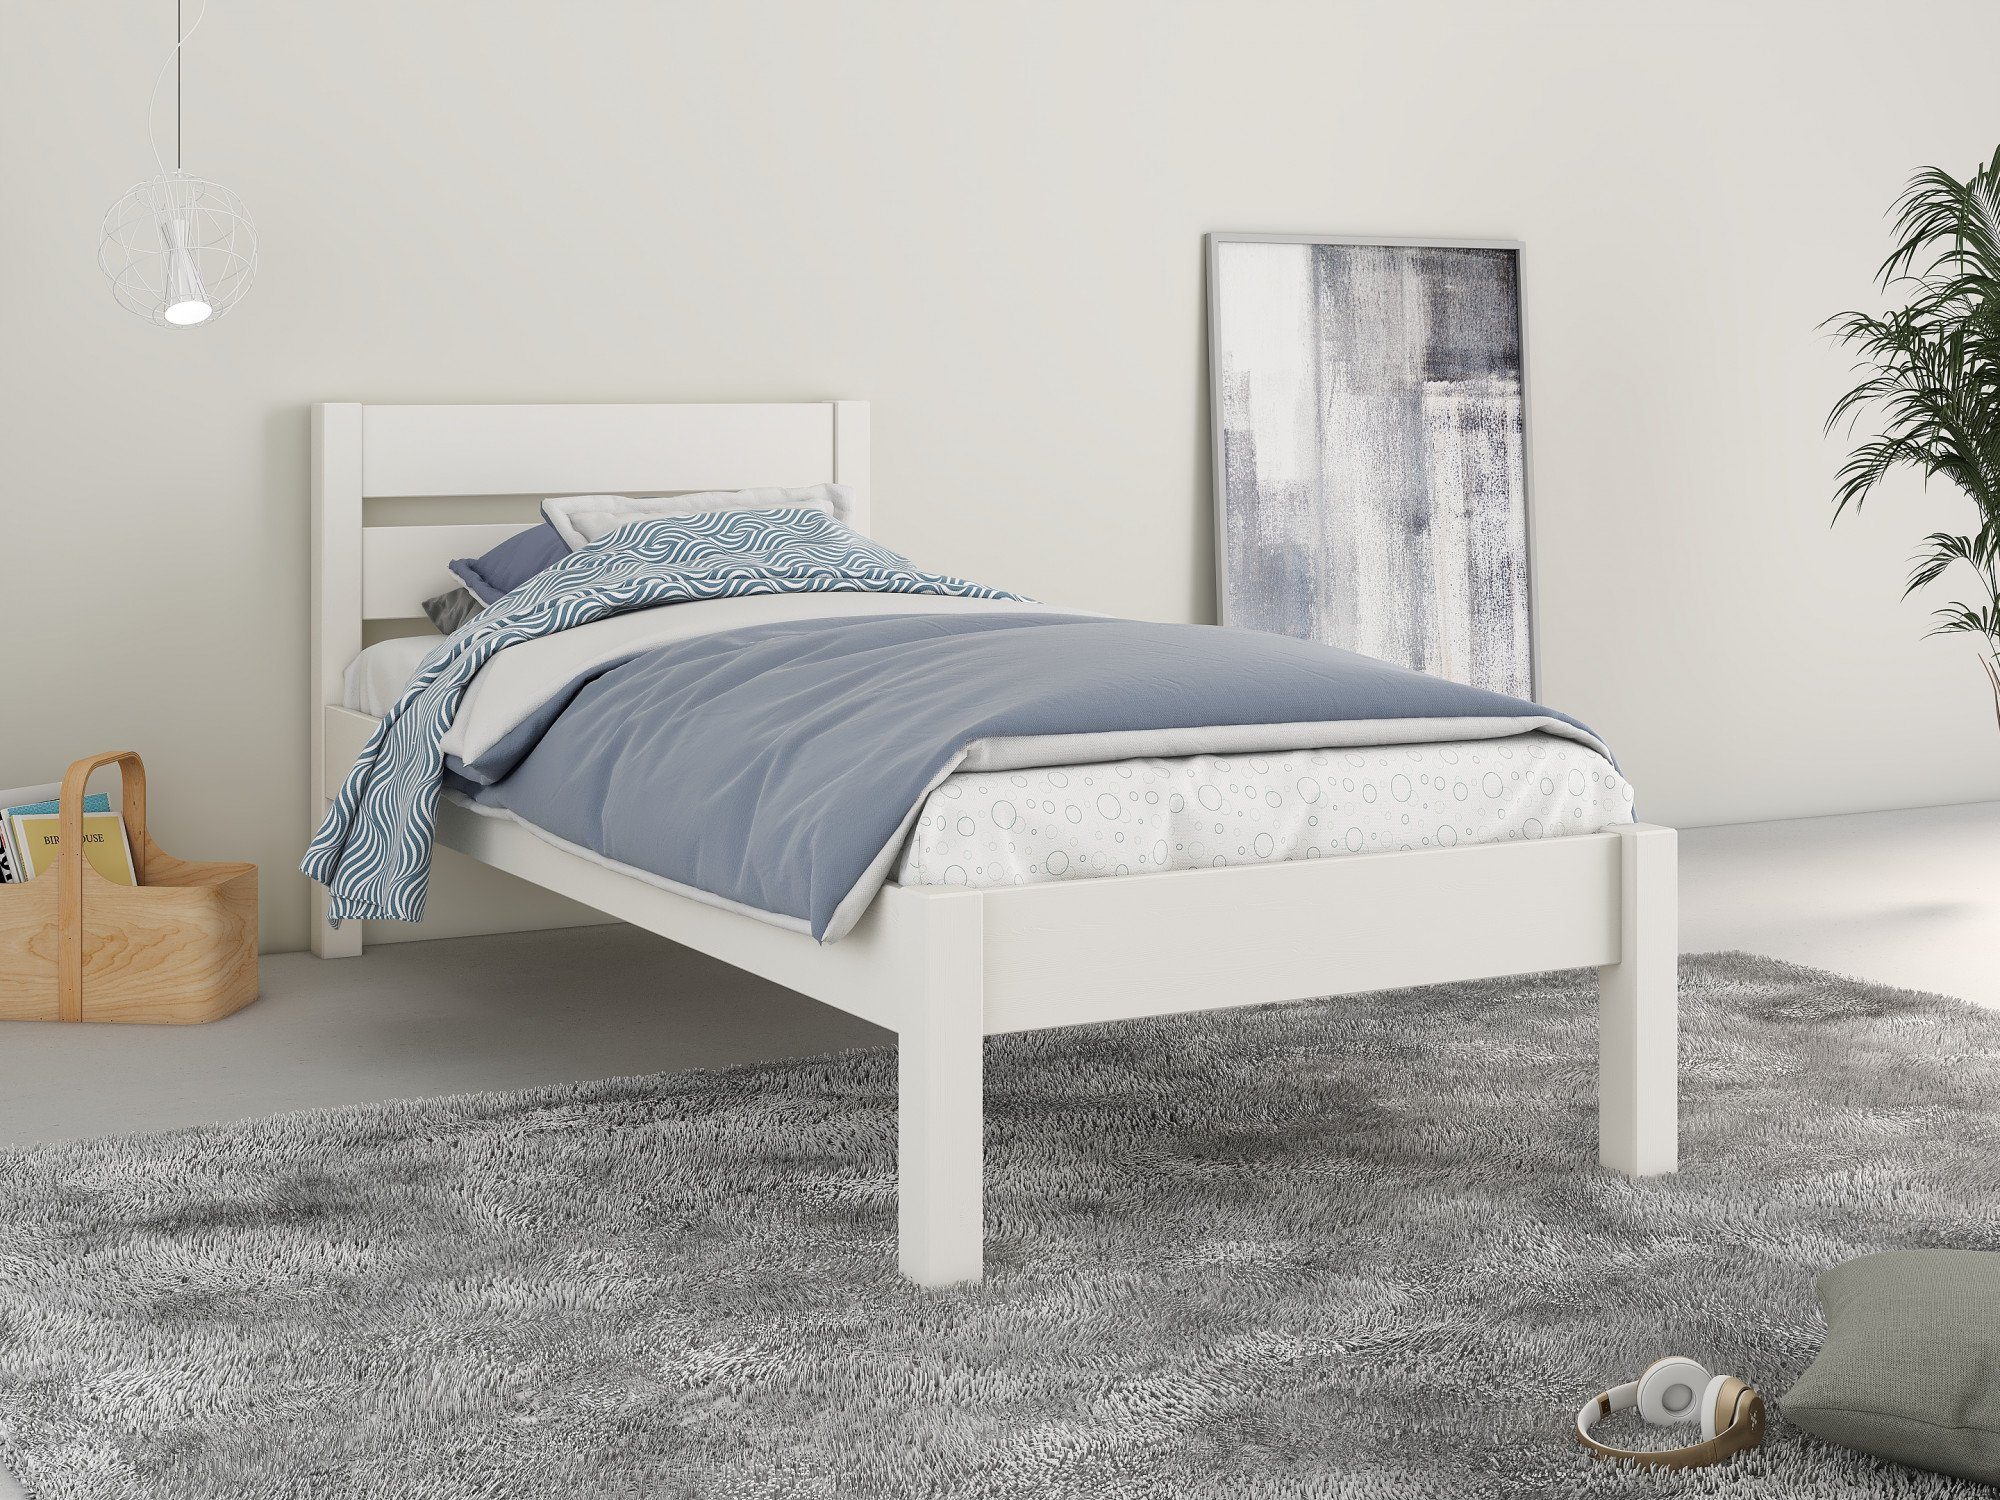 Home affaire Bett "NOA " ideal für das Jugendzimmer, zertifiziertes Massivholz, skandinavisches Design weiß | weiß | weiß | weiß